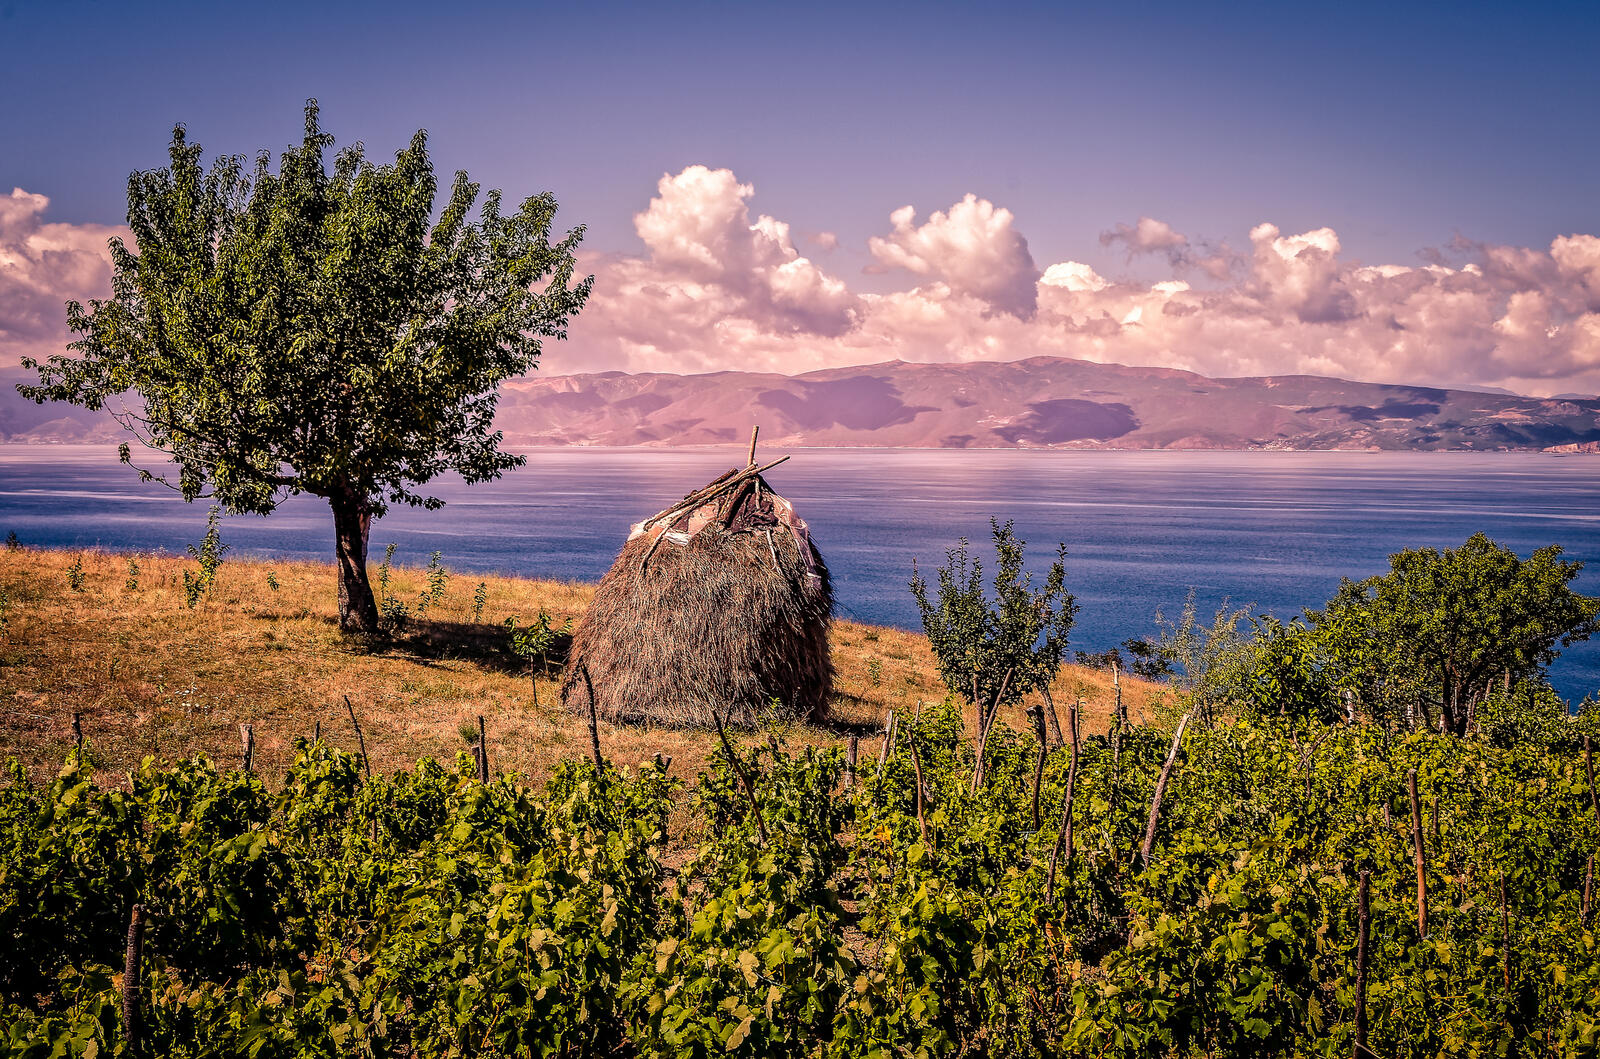 Обои Охридское озеро Охрид Македония на рабочий стол